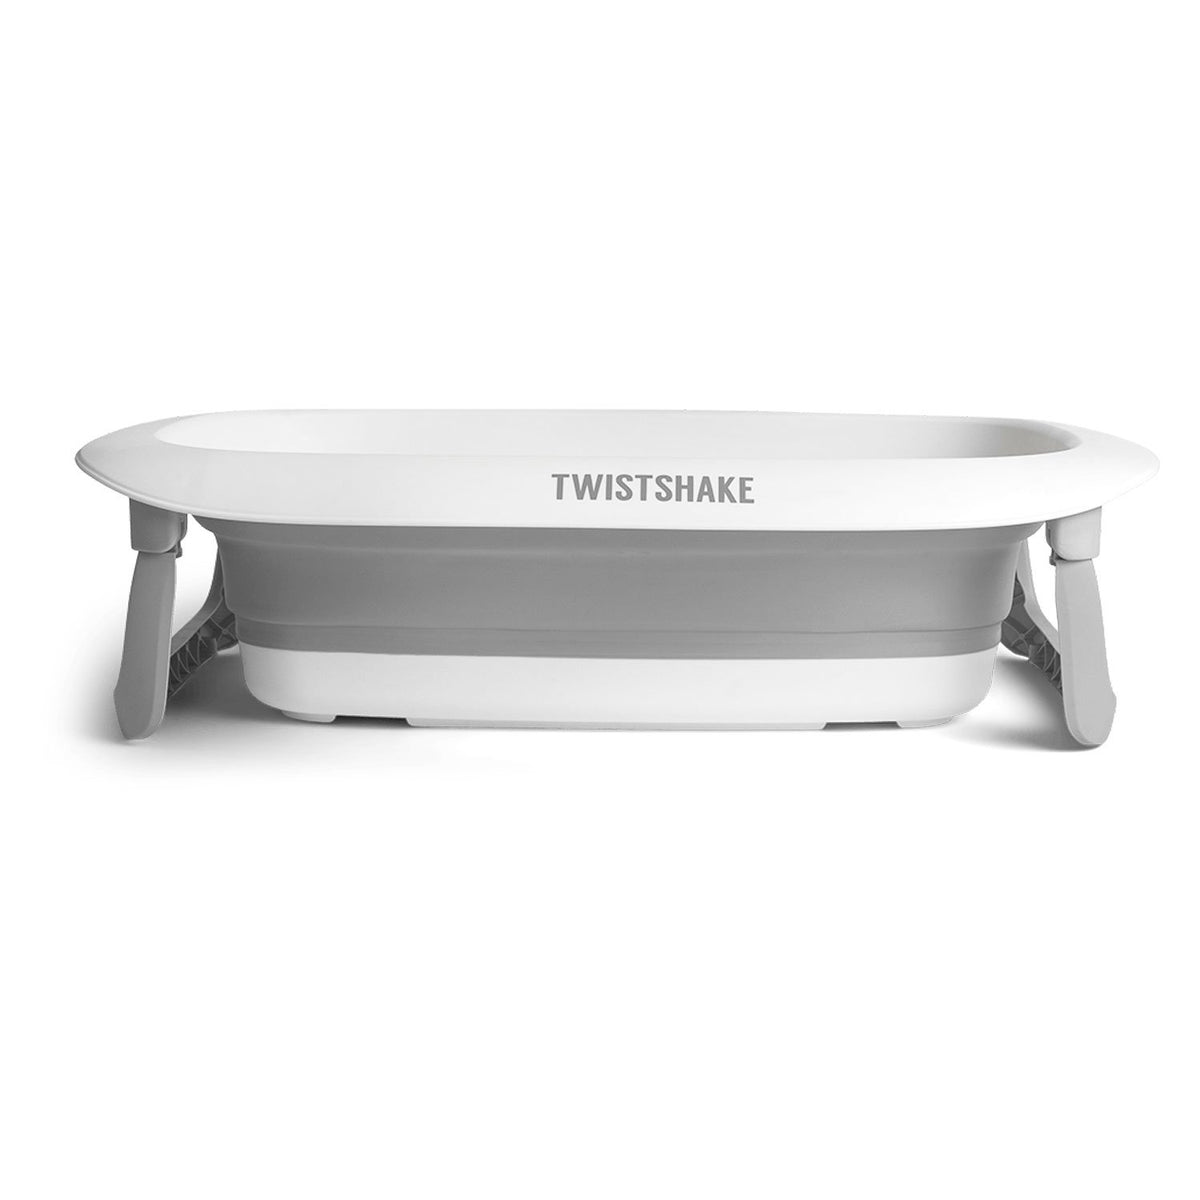 Twistshake Badewanne zusammenklappbar